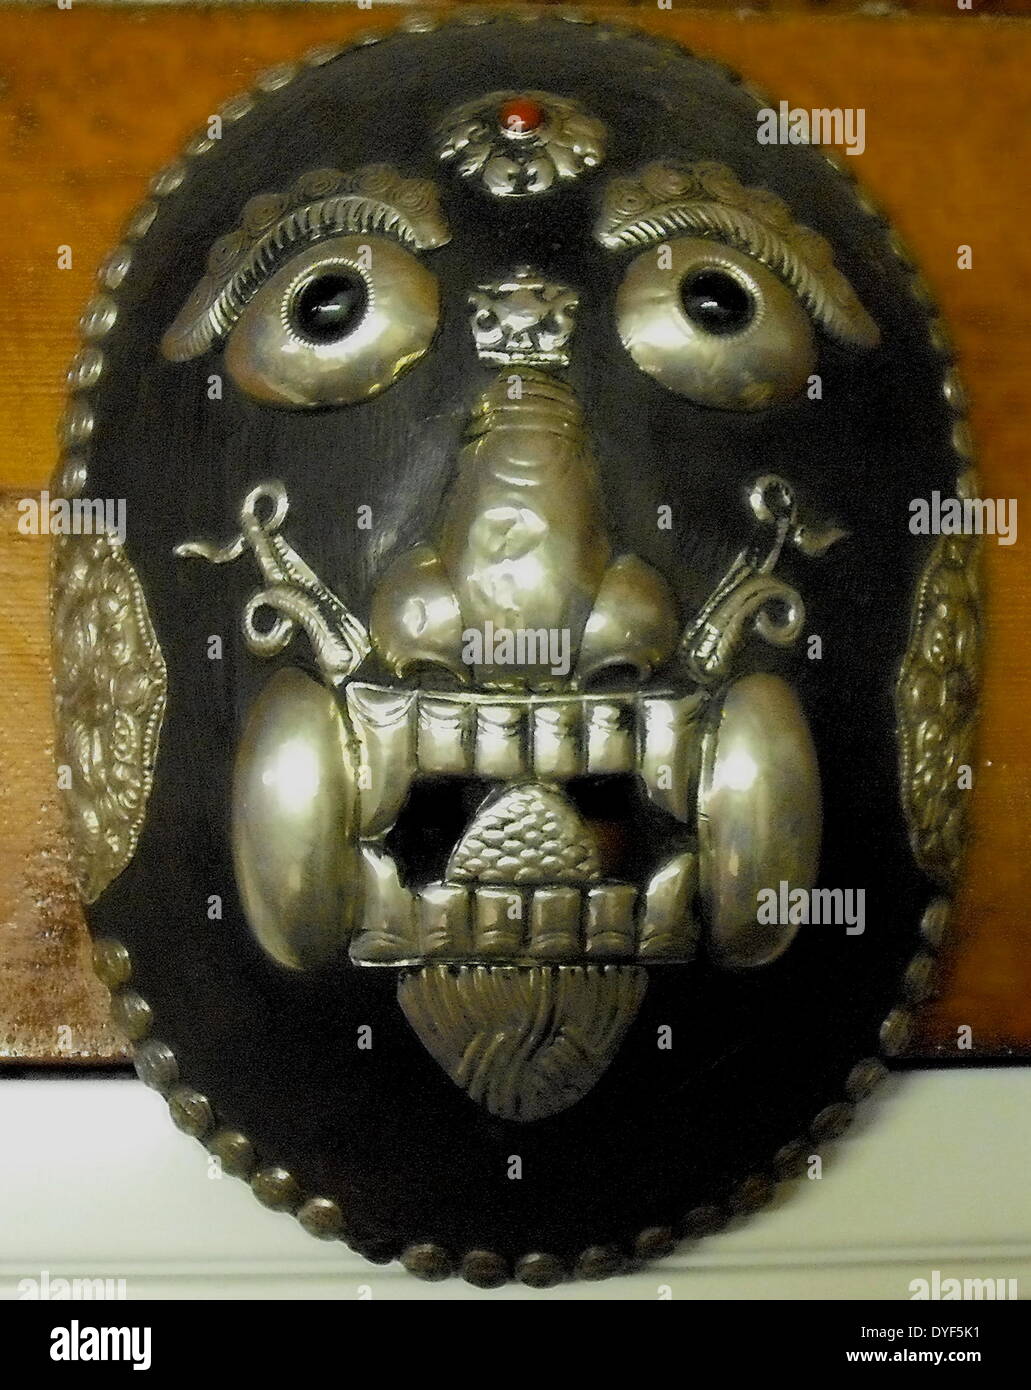 L'ancien Tibet : Mahakala masque, la fin de la dynastie des Qing ; 1800 - 1912 AD, de Lhasa, Tibet. Une divinité protectrice avec une jante de cinquante crânes. Bois et argent. Troisième œil sur le front. Banque D'Images